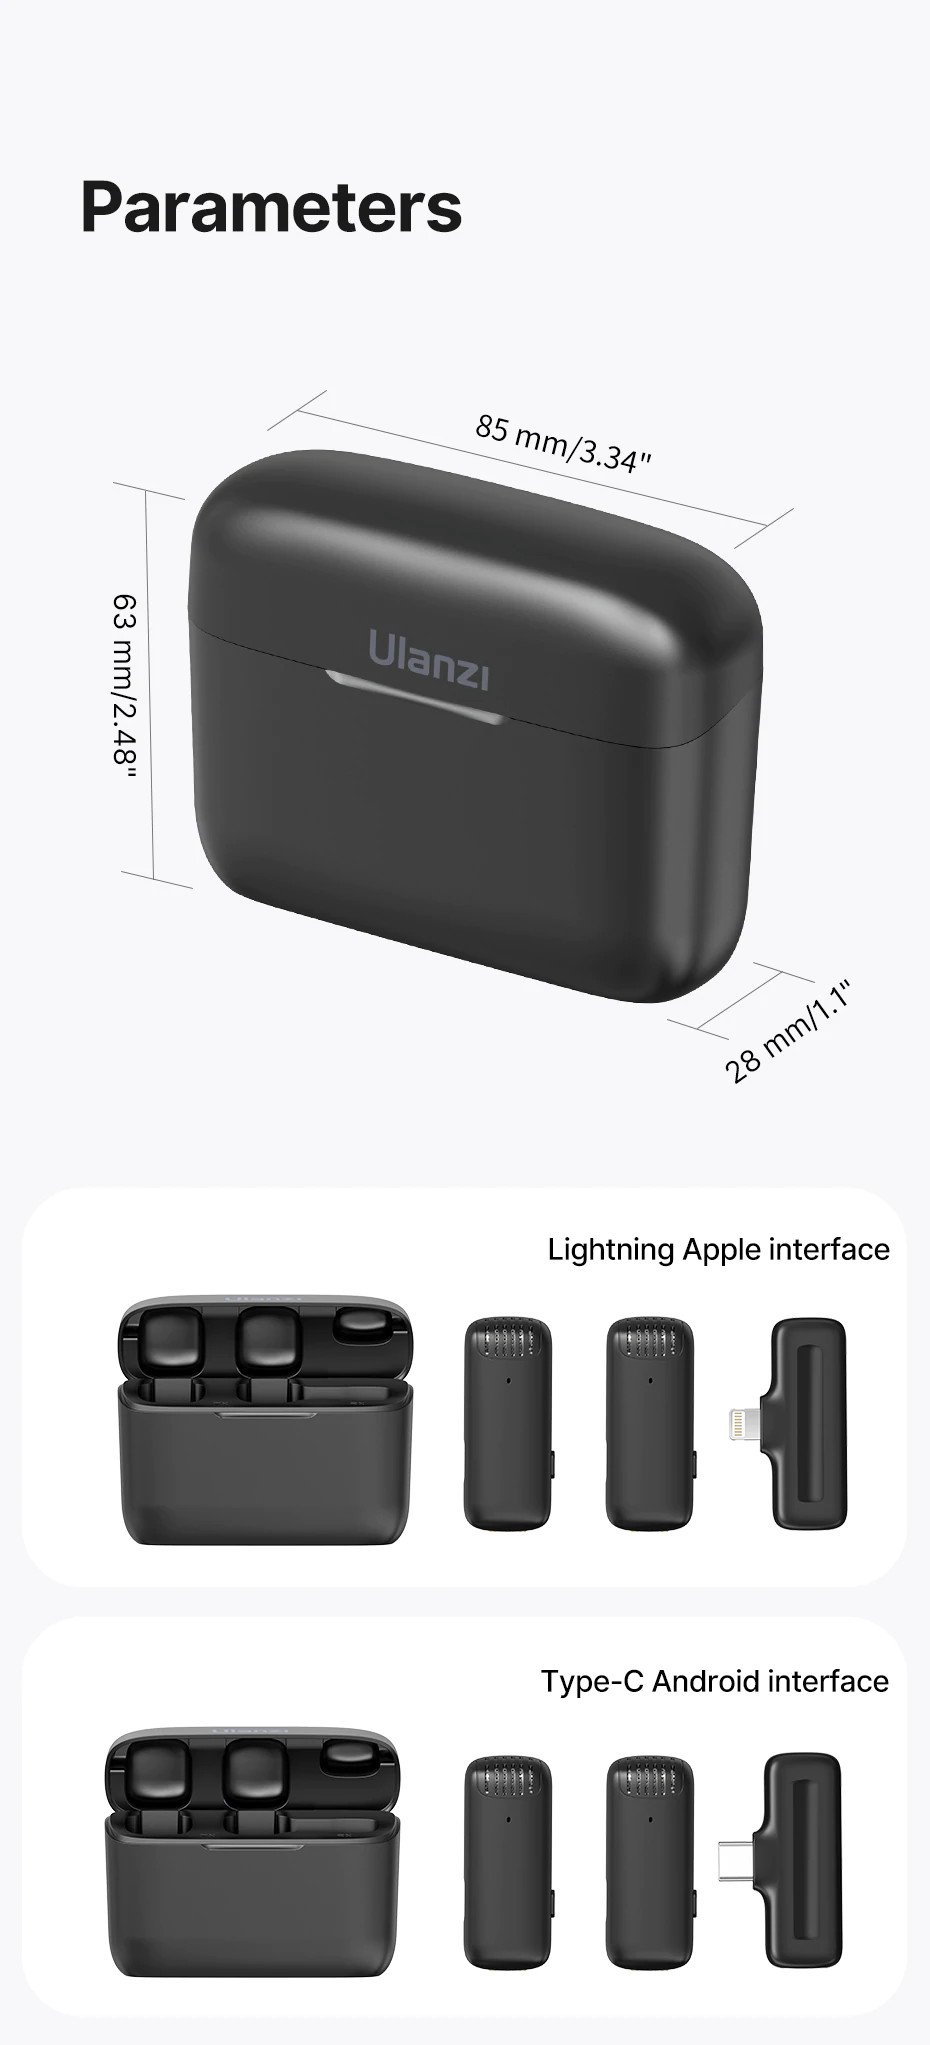 ULANZI J12 Series (Màu Đen) - Mic thu âm không dây dành cho Điện thoại iOS cổng Lightning hoặc Android cổng Type-C